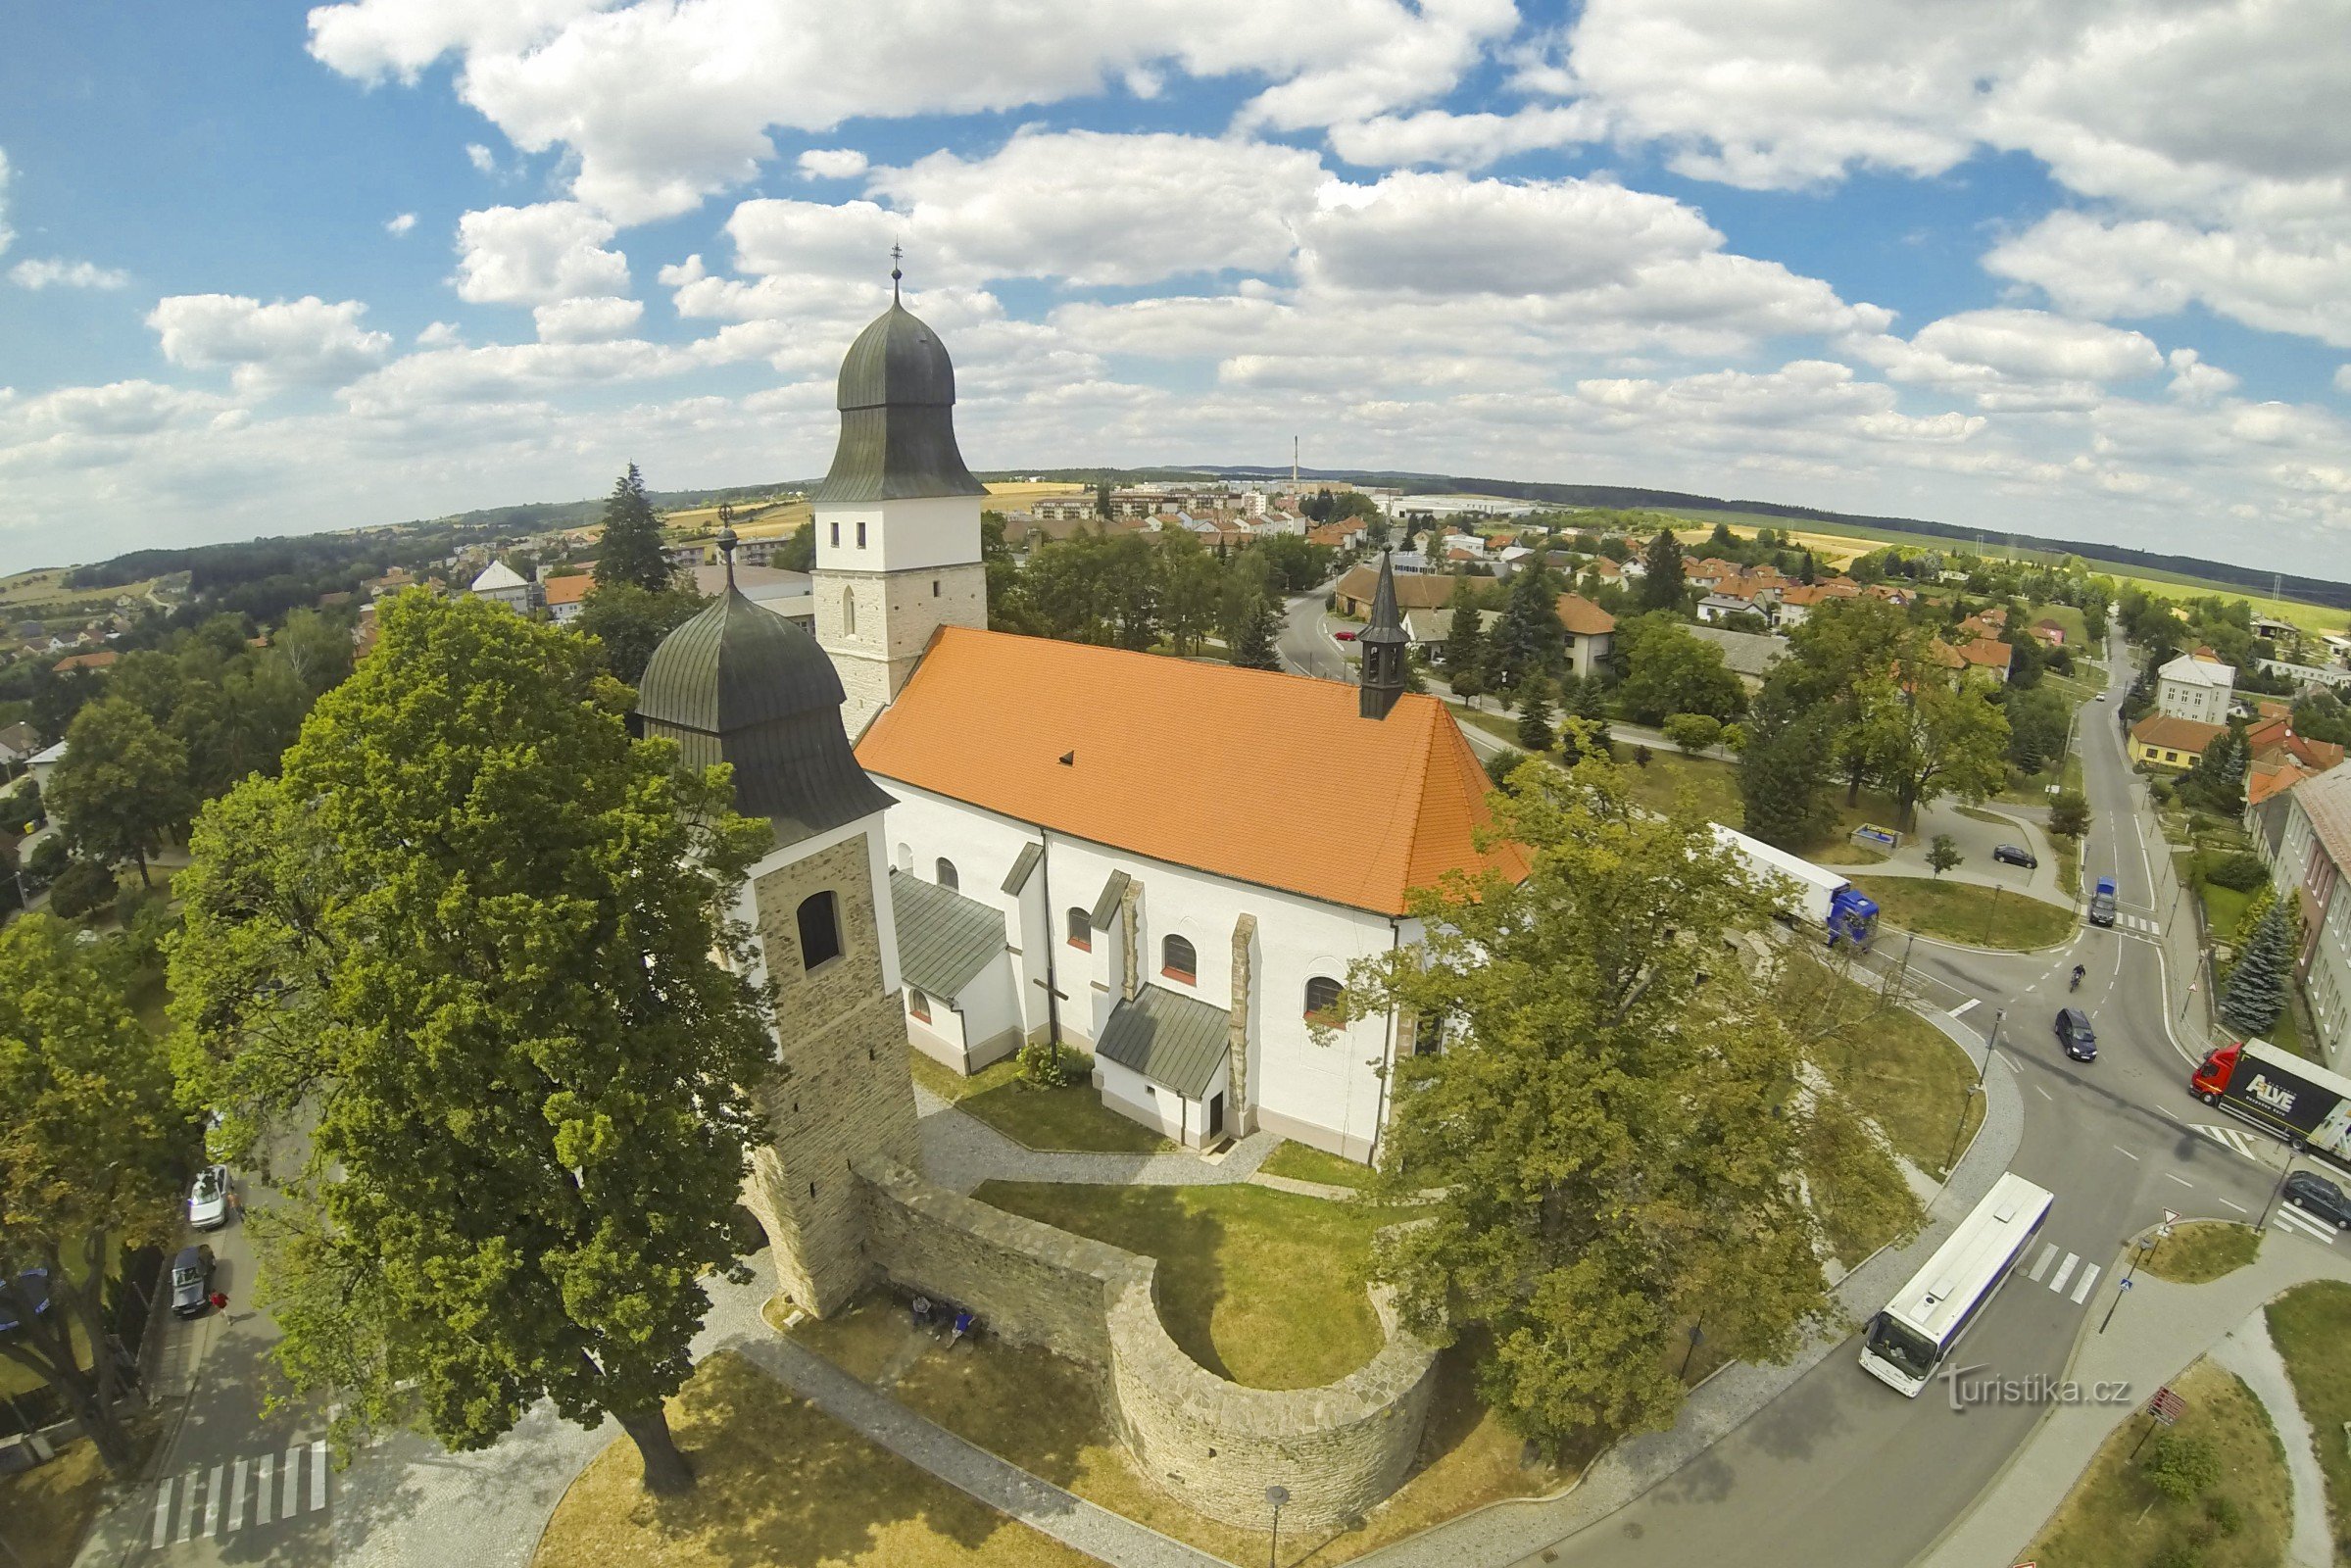 Orașul Velká Biteš